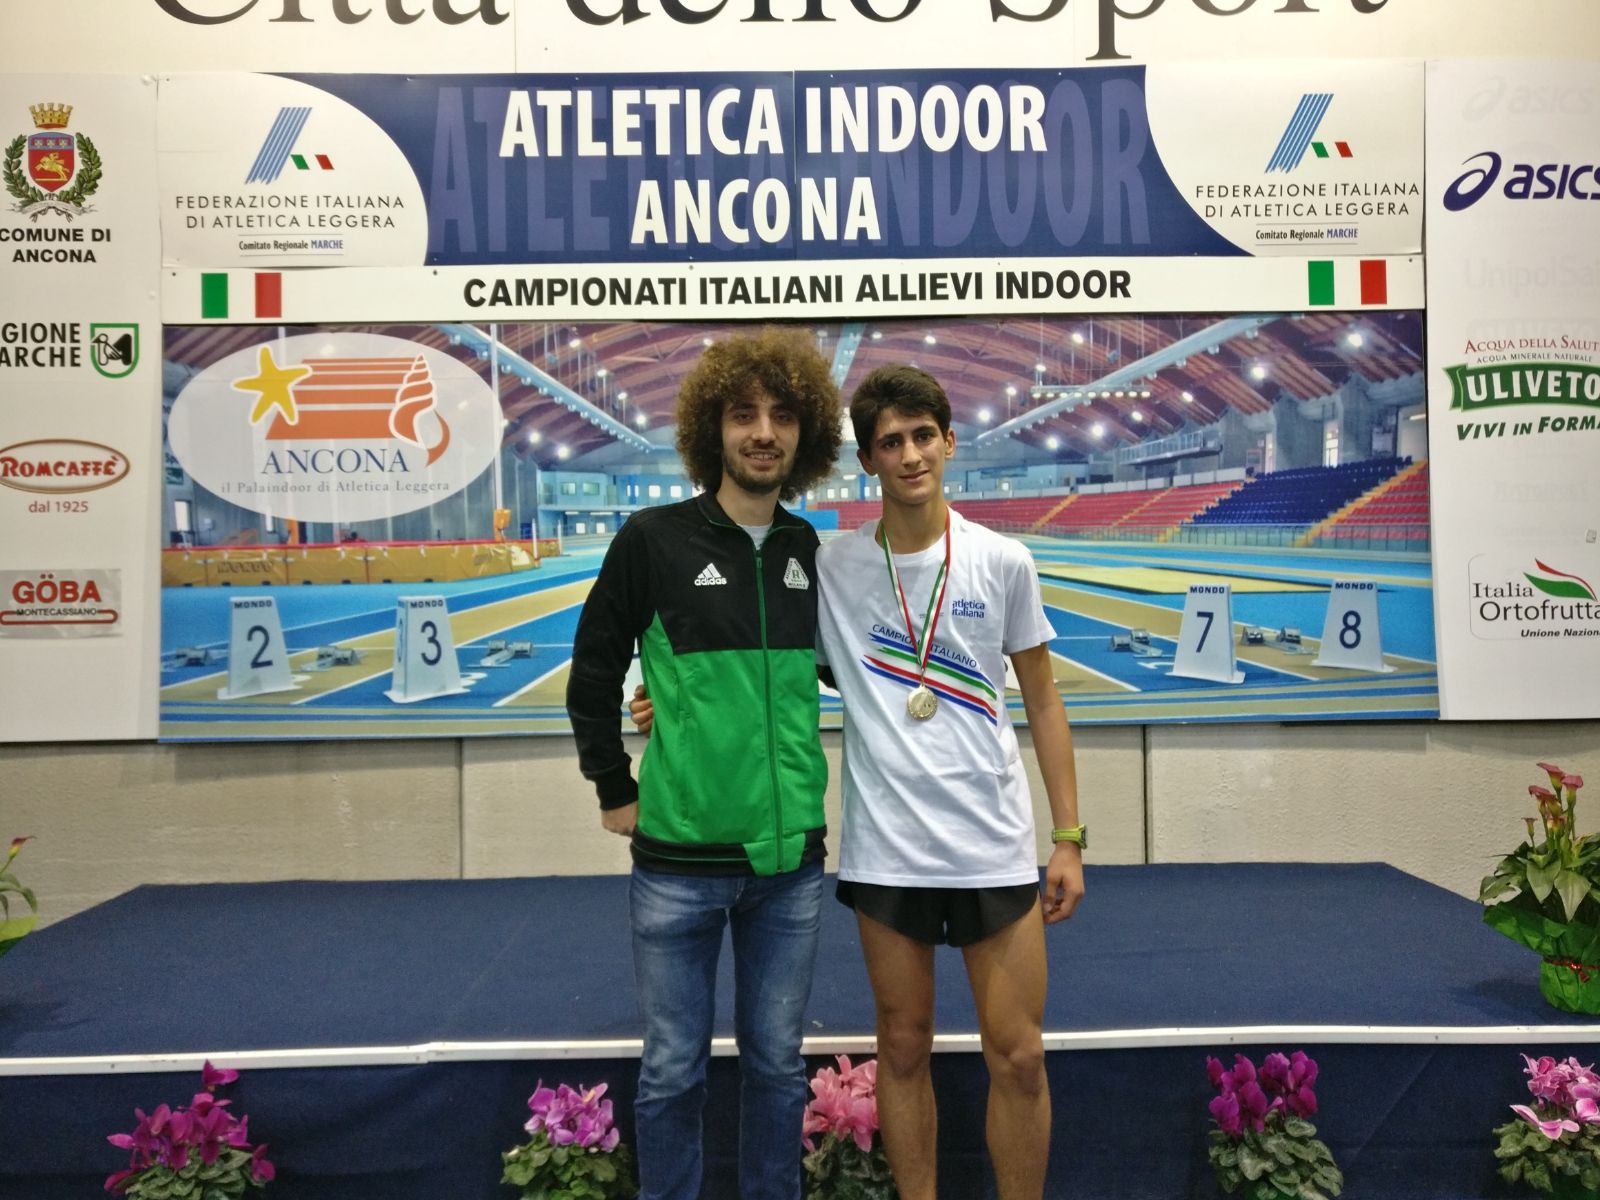 Gabriele Gamba Andrea Previtali Ancona 2018 podio